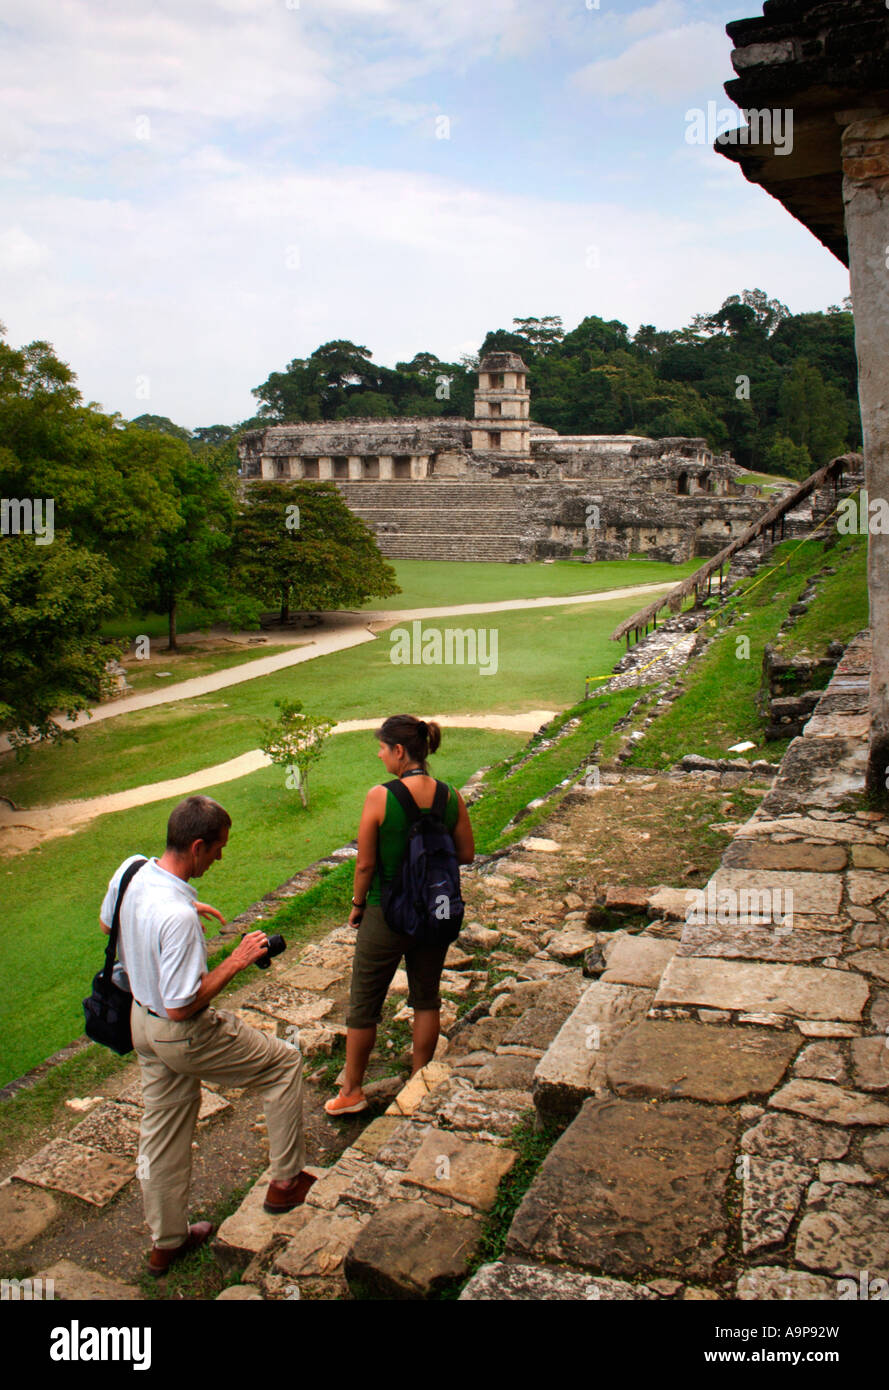 Touristischen Blick auf Tempel in Palenque, archäologische Maya Ruine, Chiapas, Mexiko Stockfoto